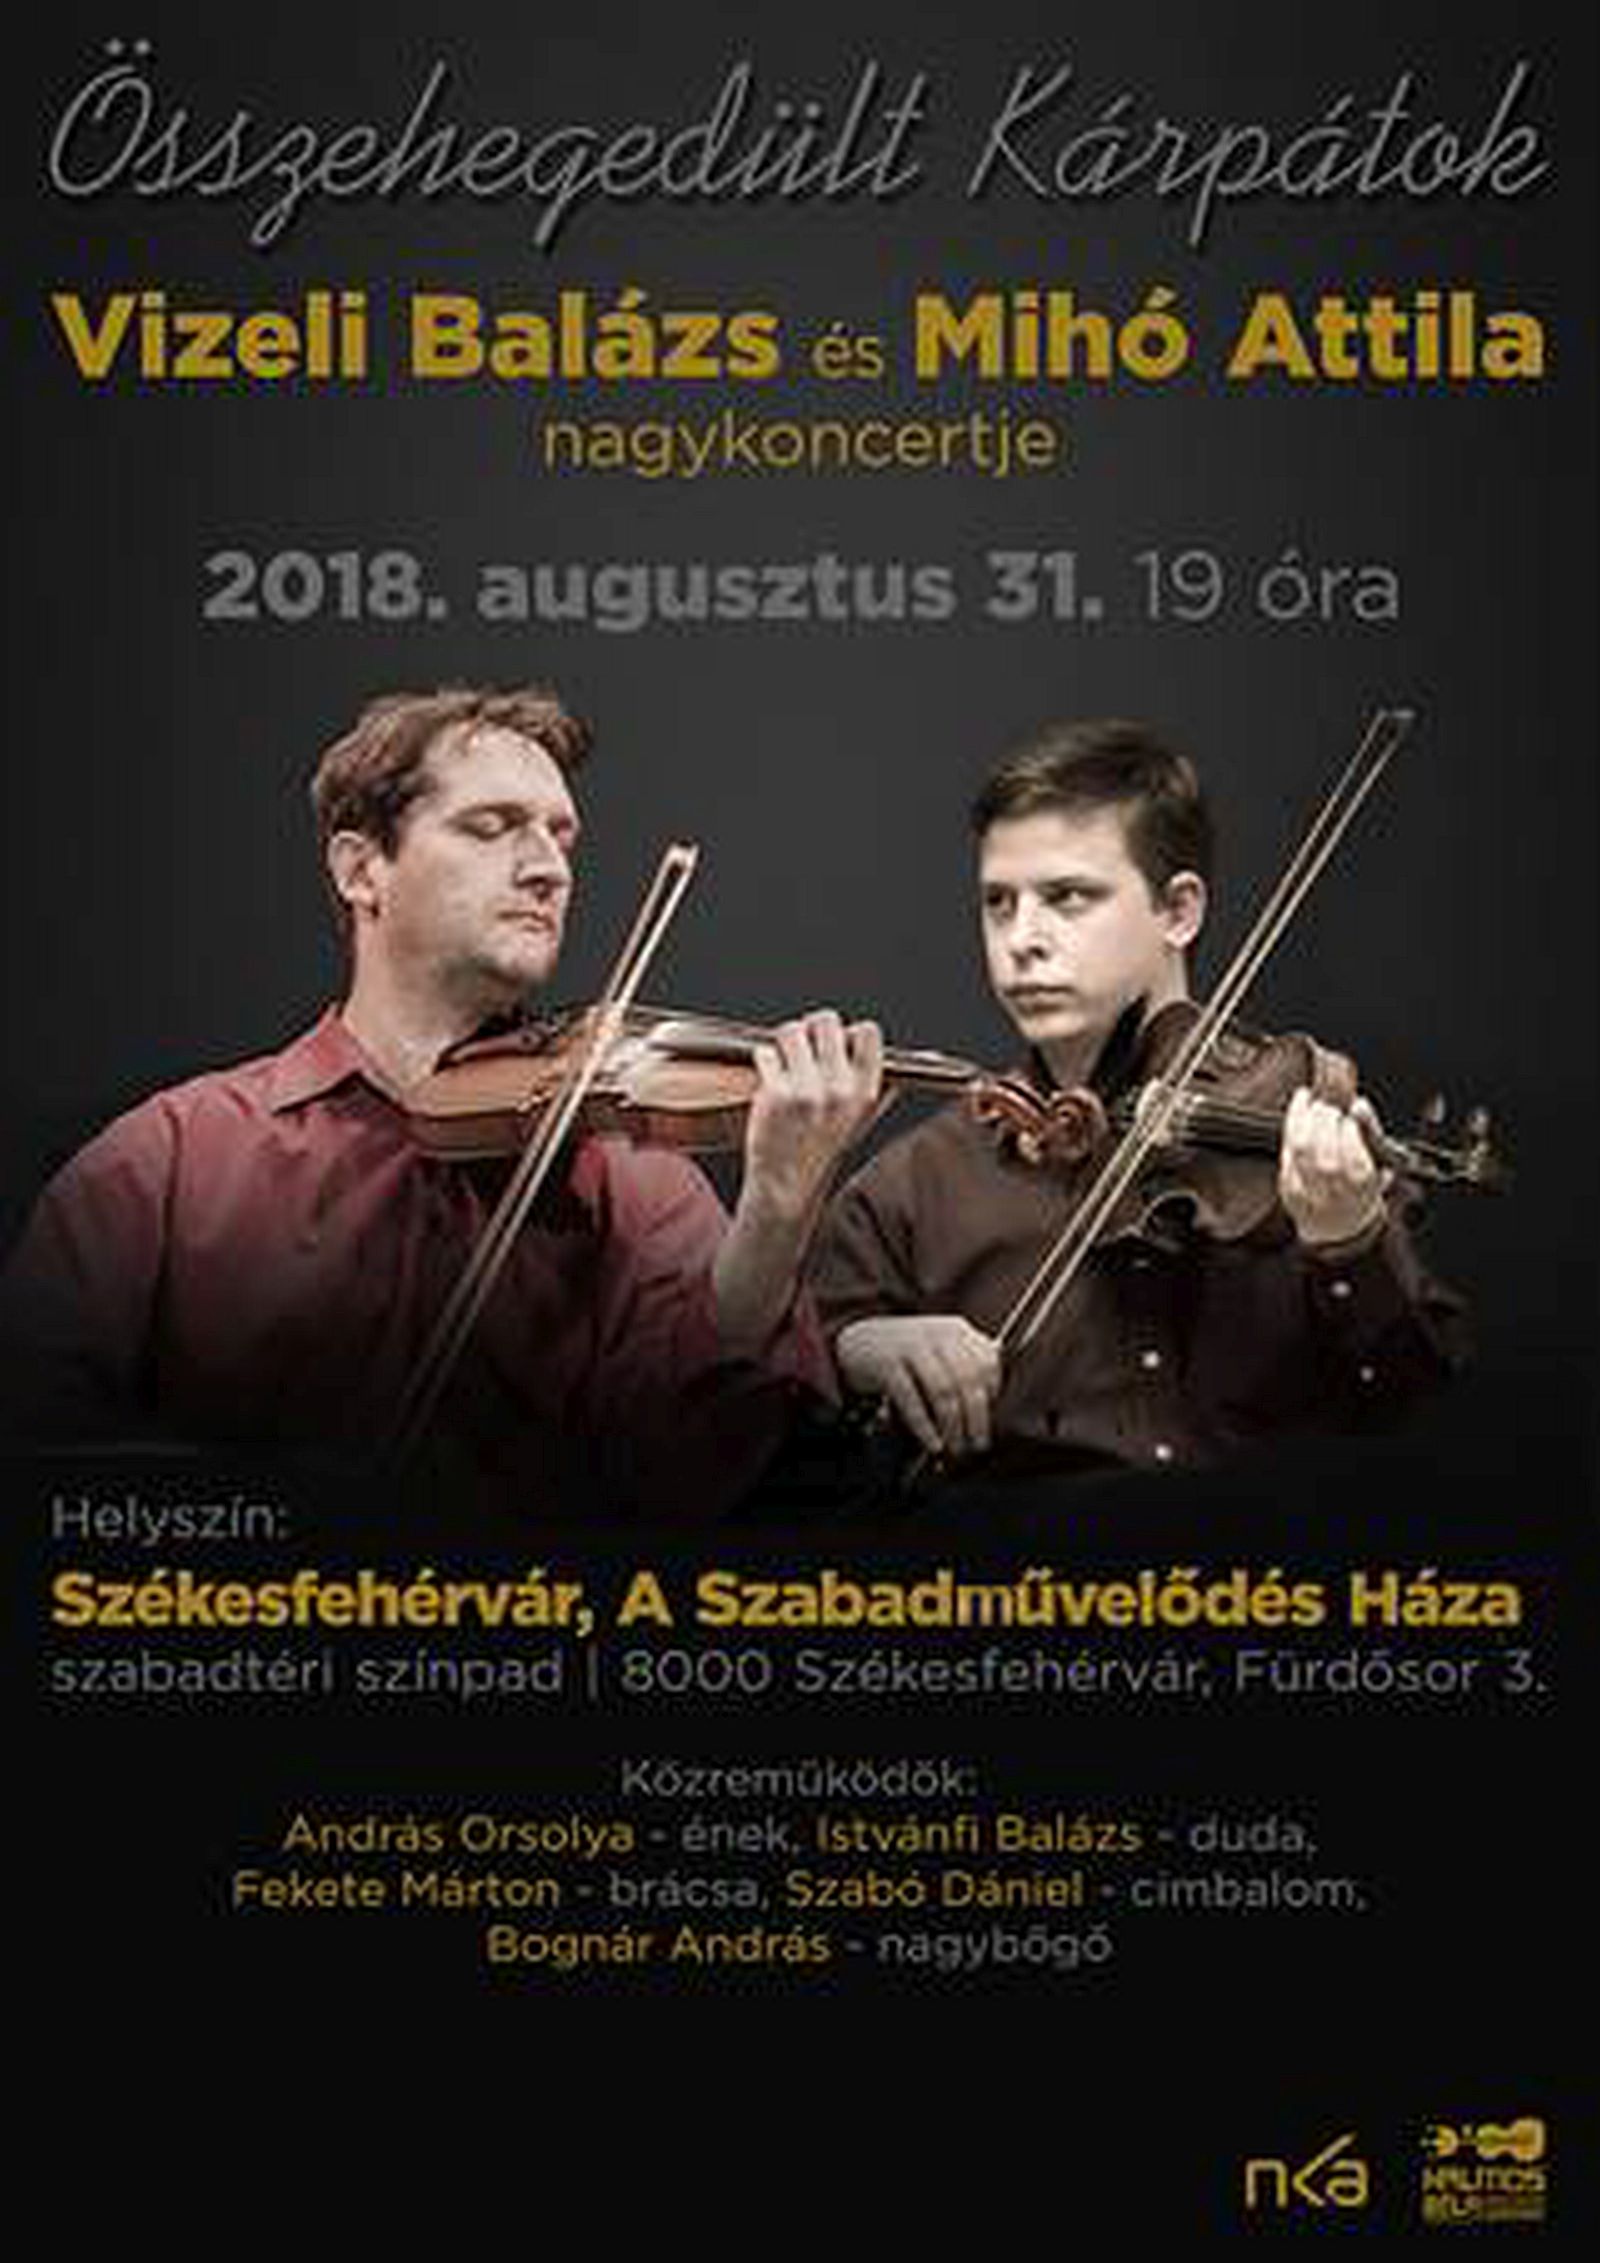 Összehegedült Kárpátok - Vizeli Balázs és Mihó Attila szabadtéri koncertje pénteken